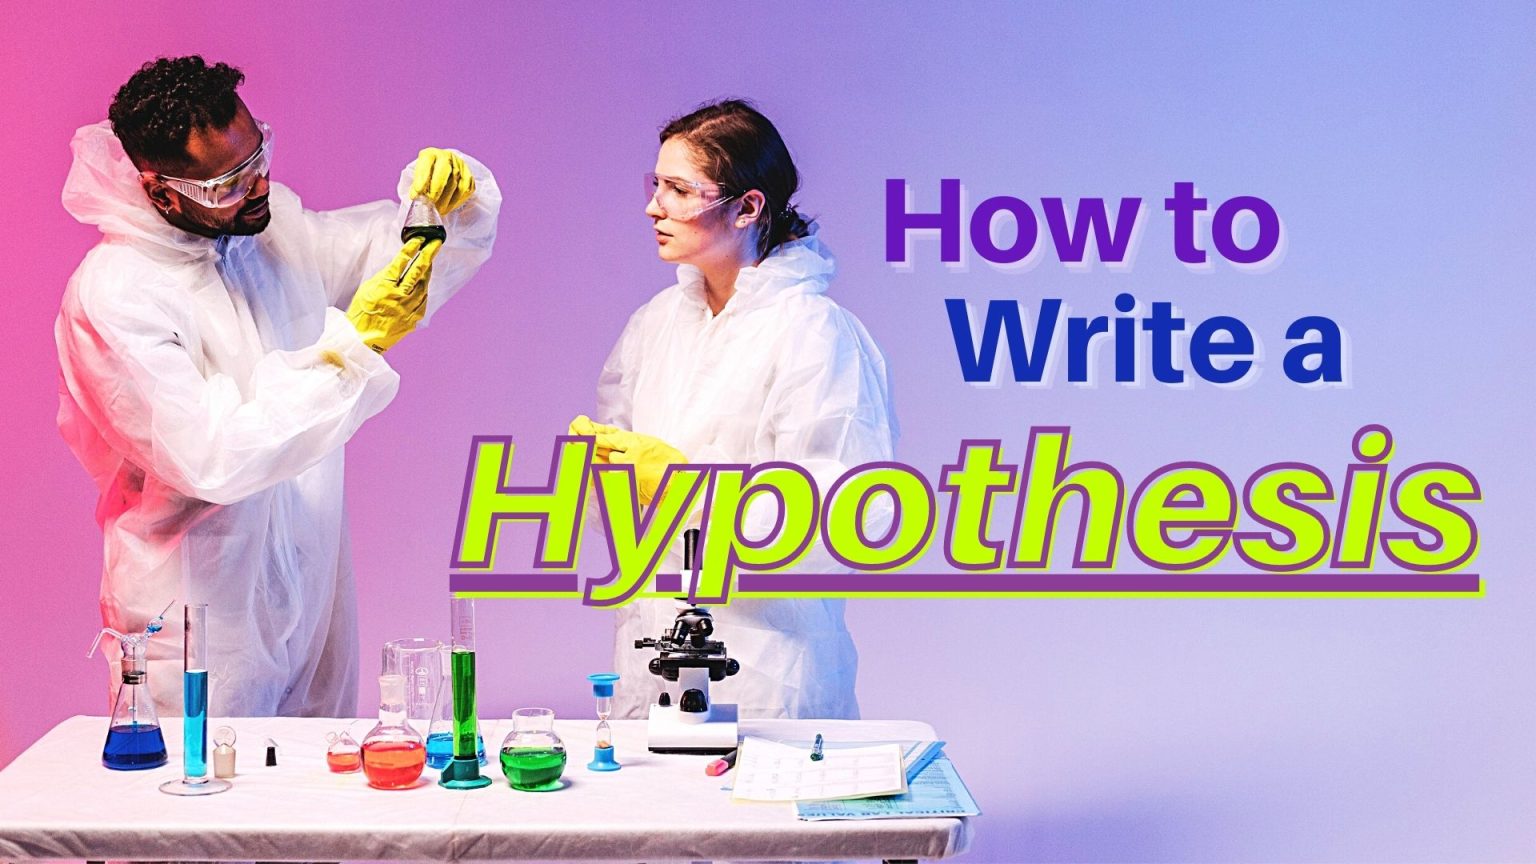 write down hypothesis